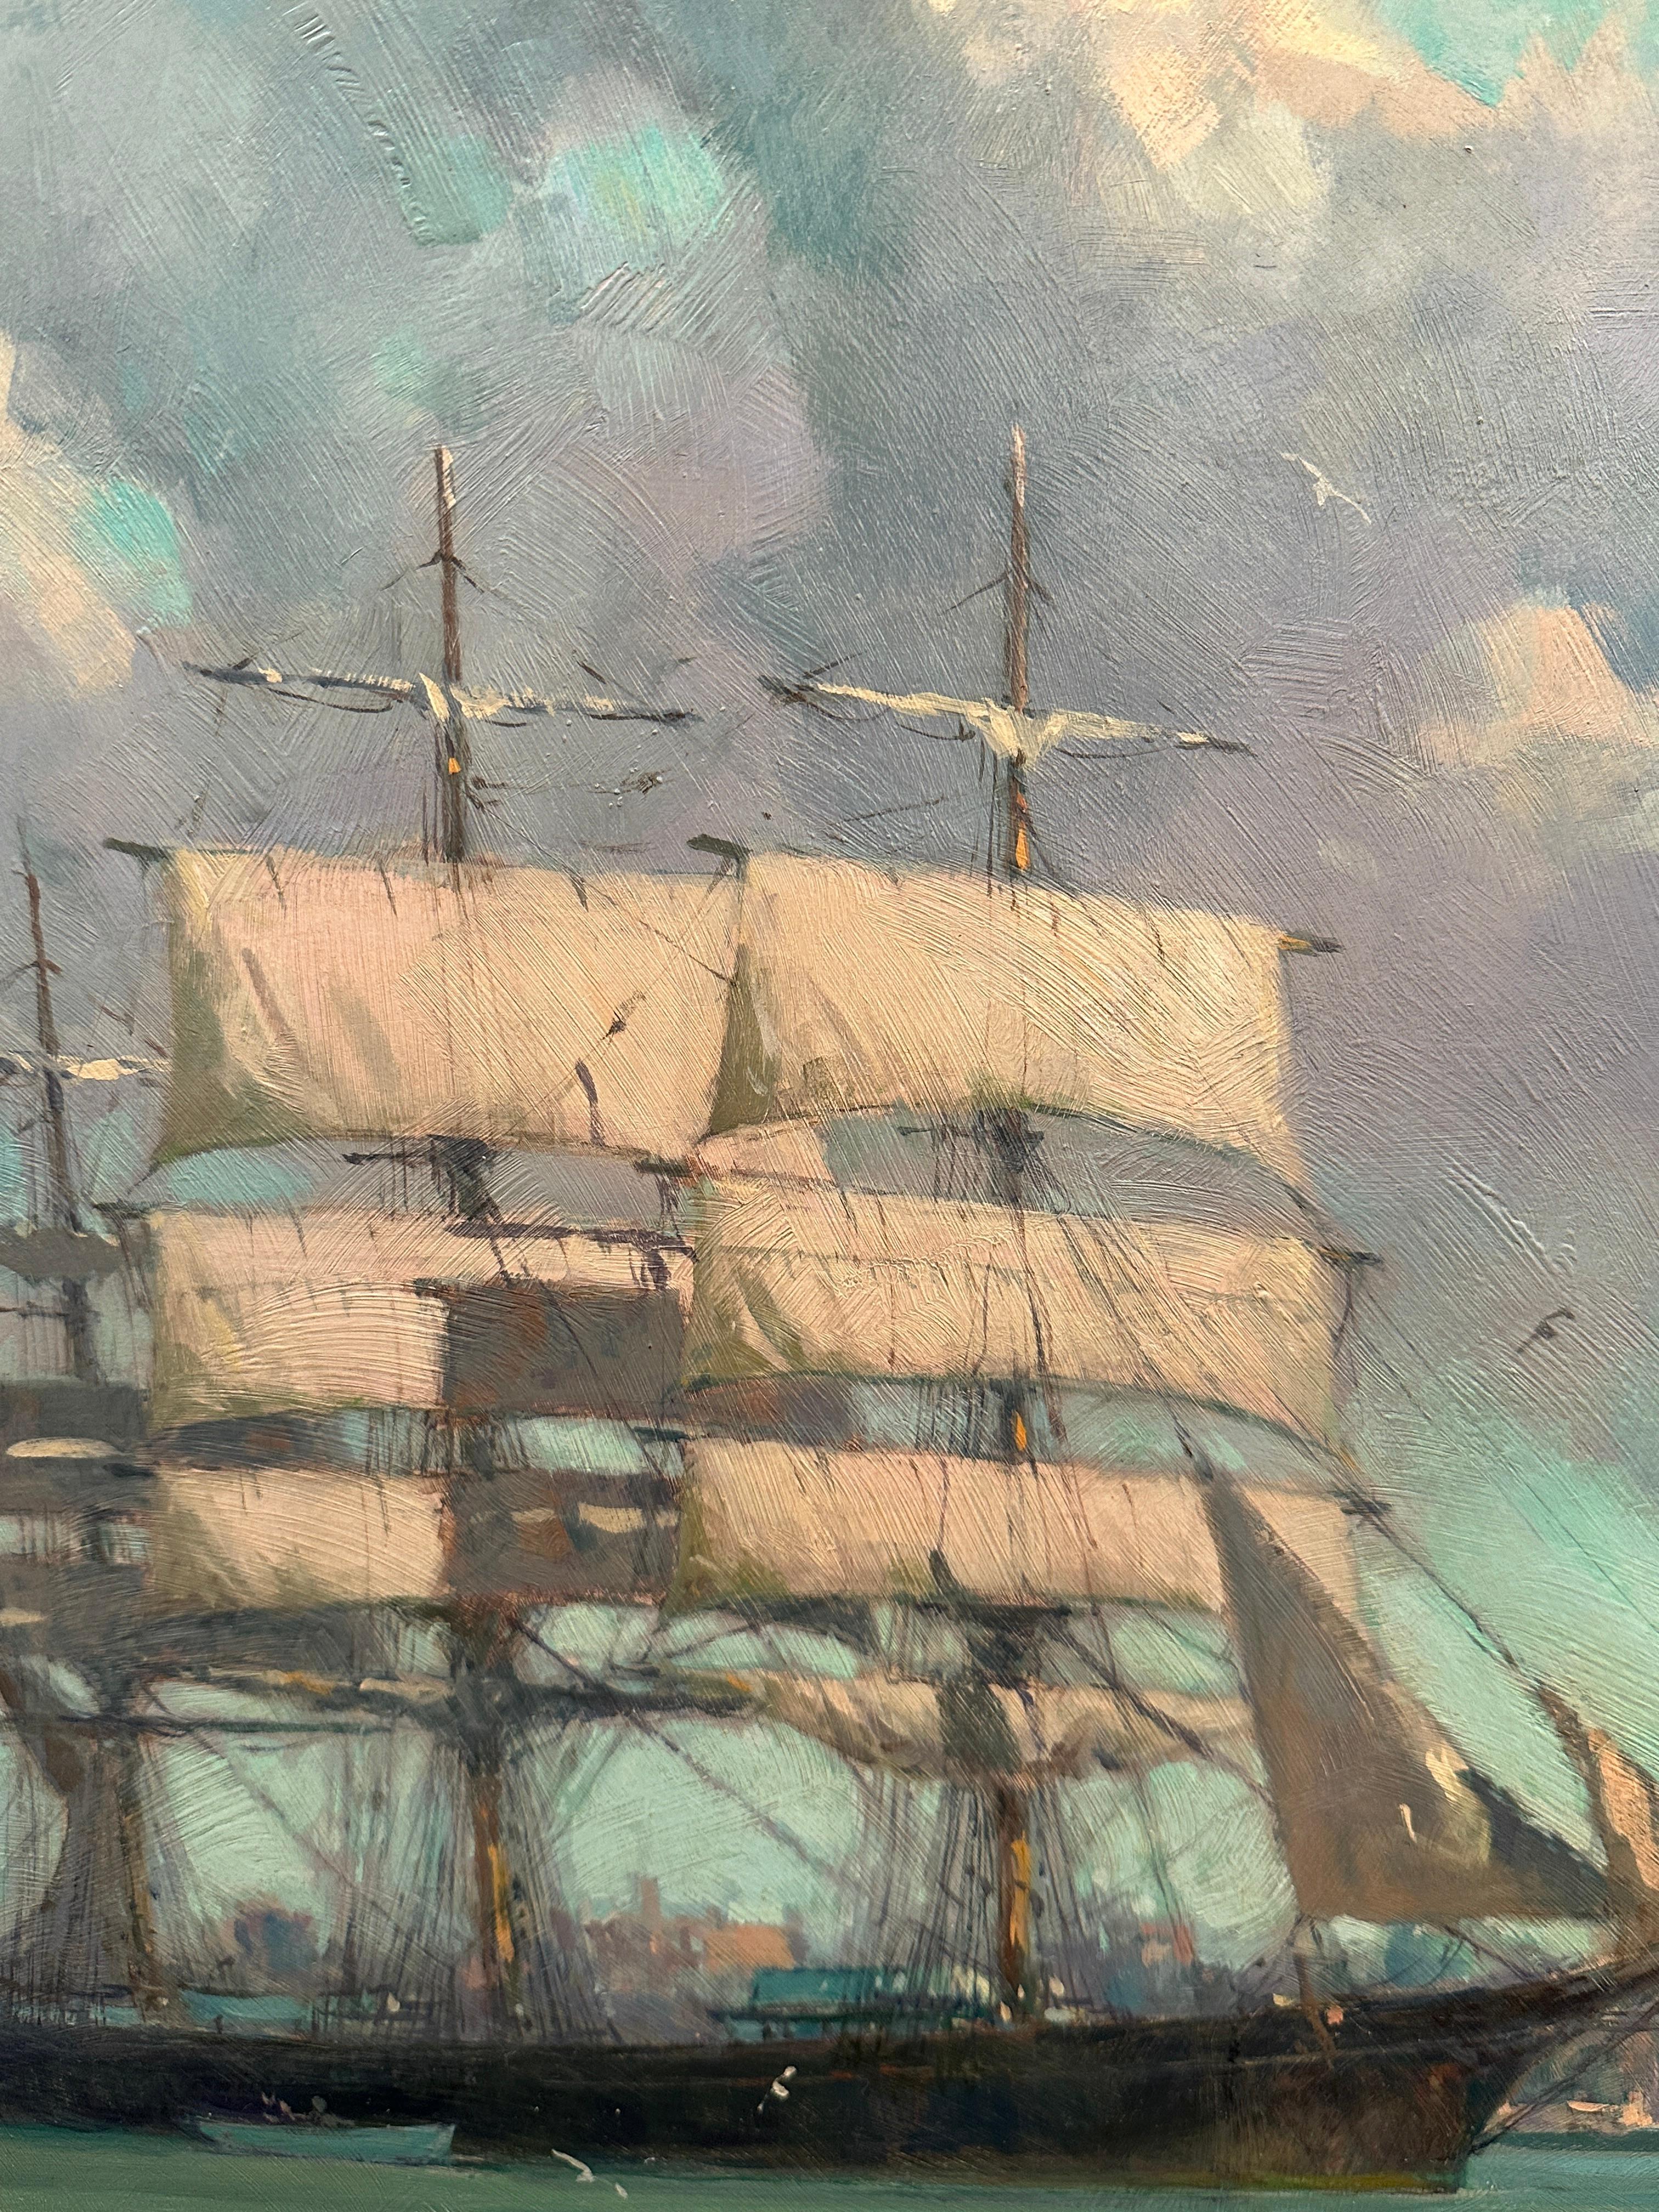 Gordon Hope Grant (1875-1962) était un éminent artiste américain réputé pour ses aquarelles maritimes et ses contributions aux Boy Scouts américains. Né à San Francisco en 1875 et décédé en 1962. L'héritage artistique de Grant est marqué par